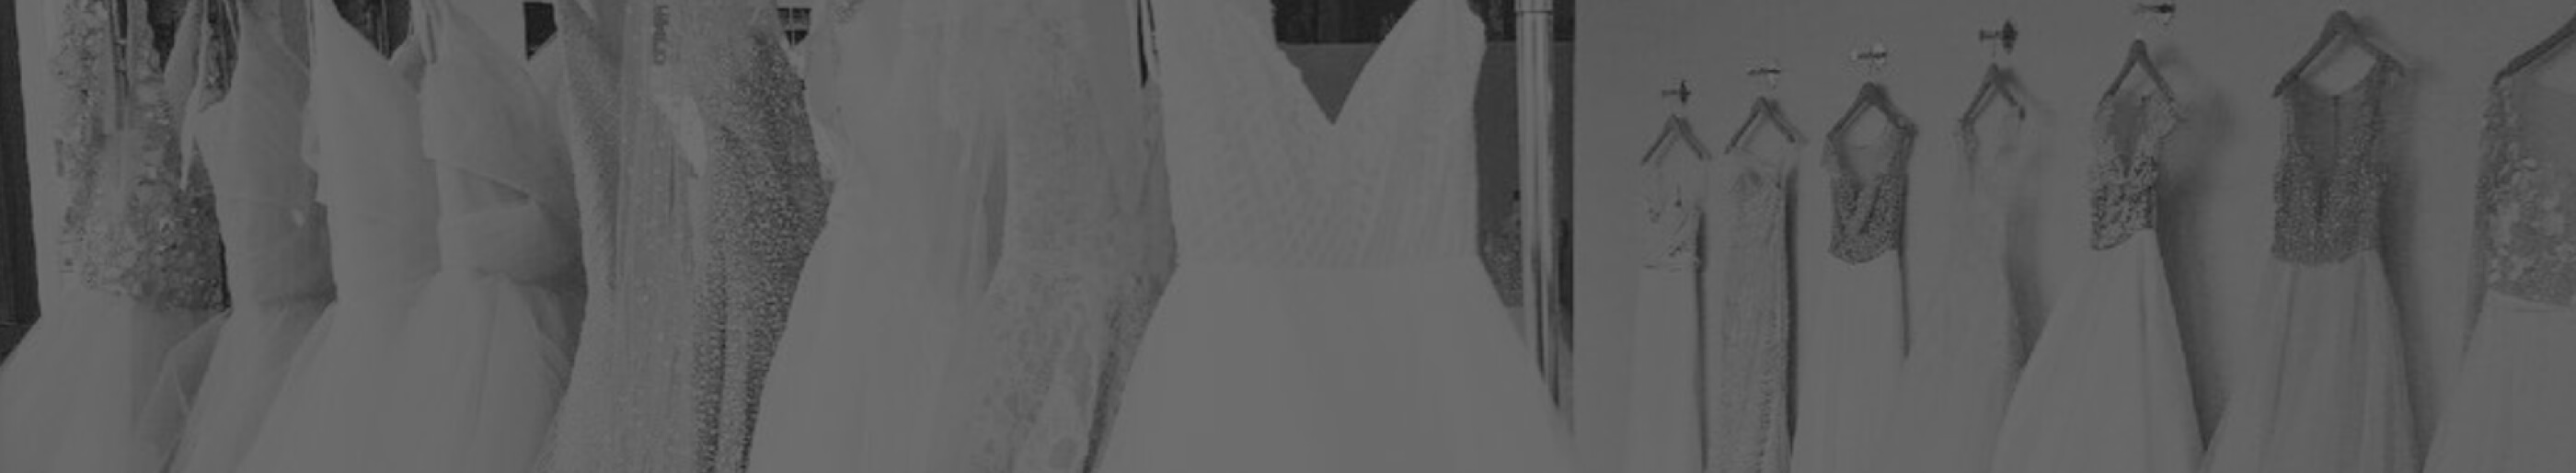 Bridal Dresses. Desktop Image